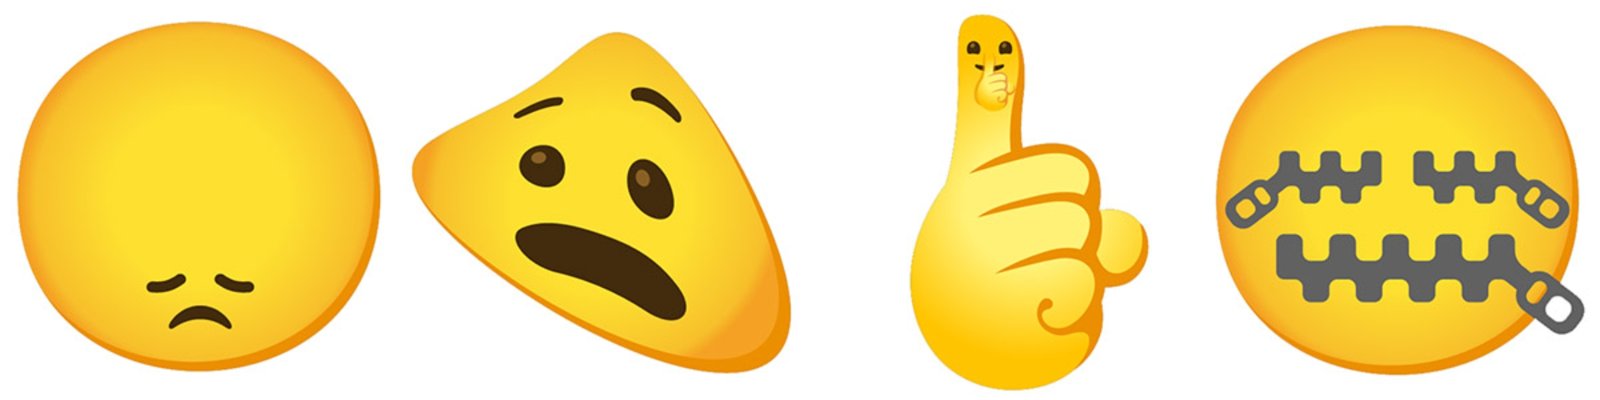 Gboard 5 combo emojis